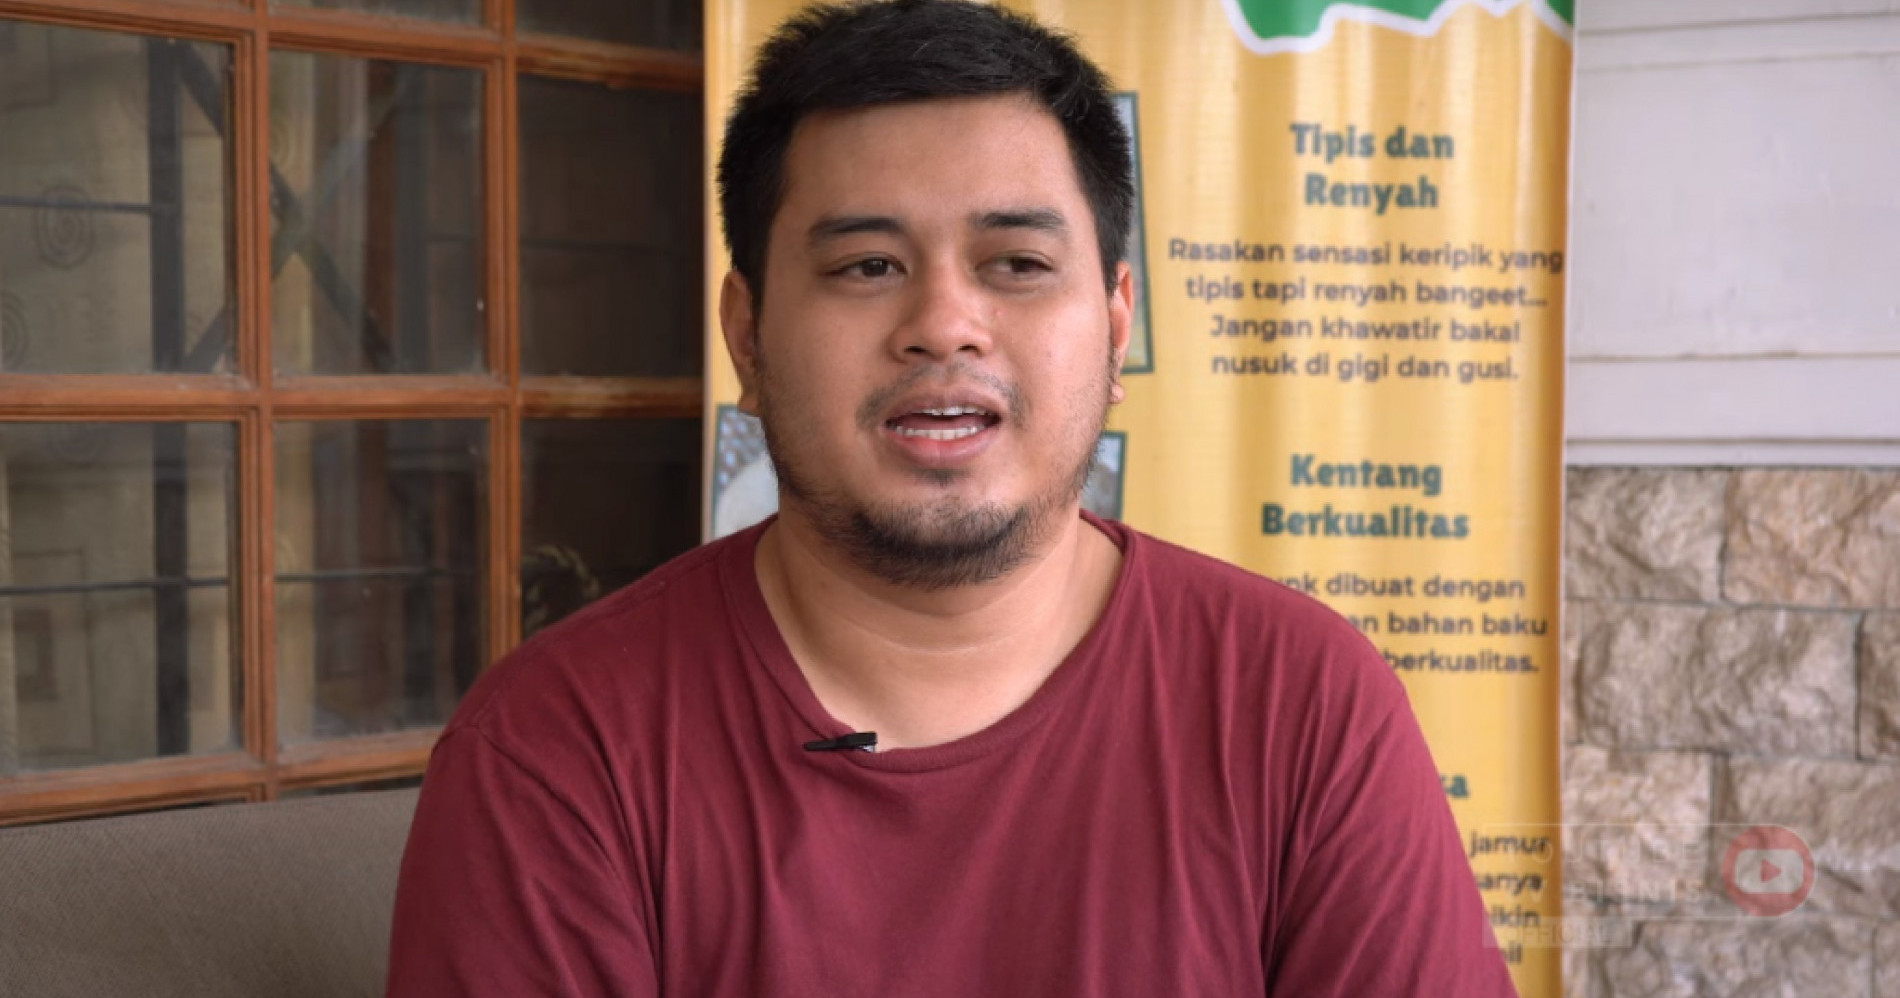 Raka, Anak Muda Asal Gamping Sleman Yogyakarta